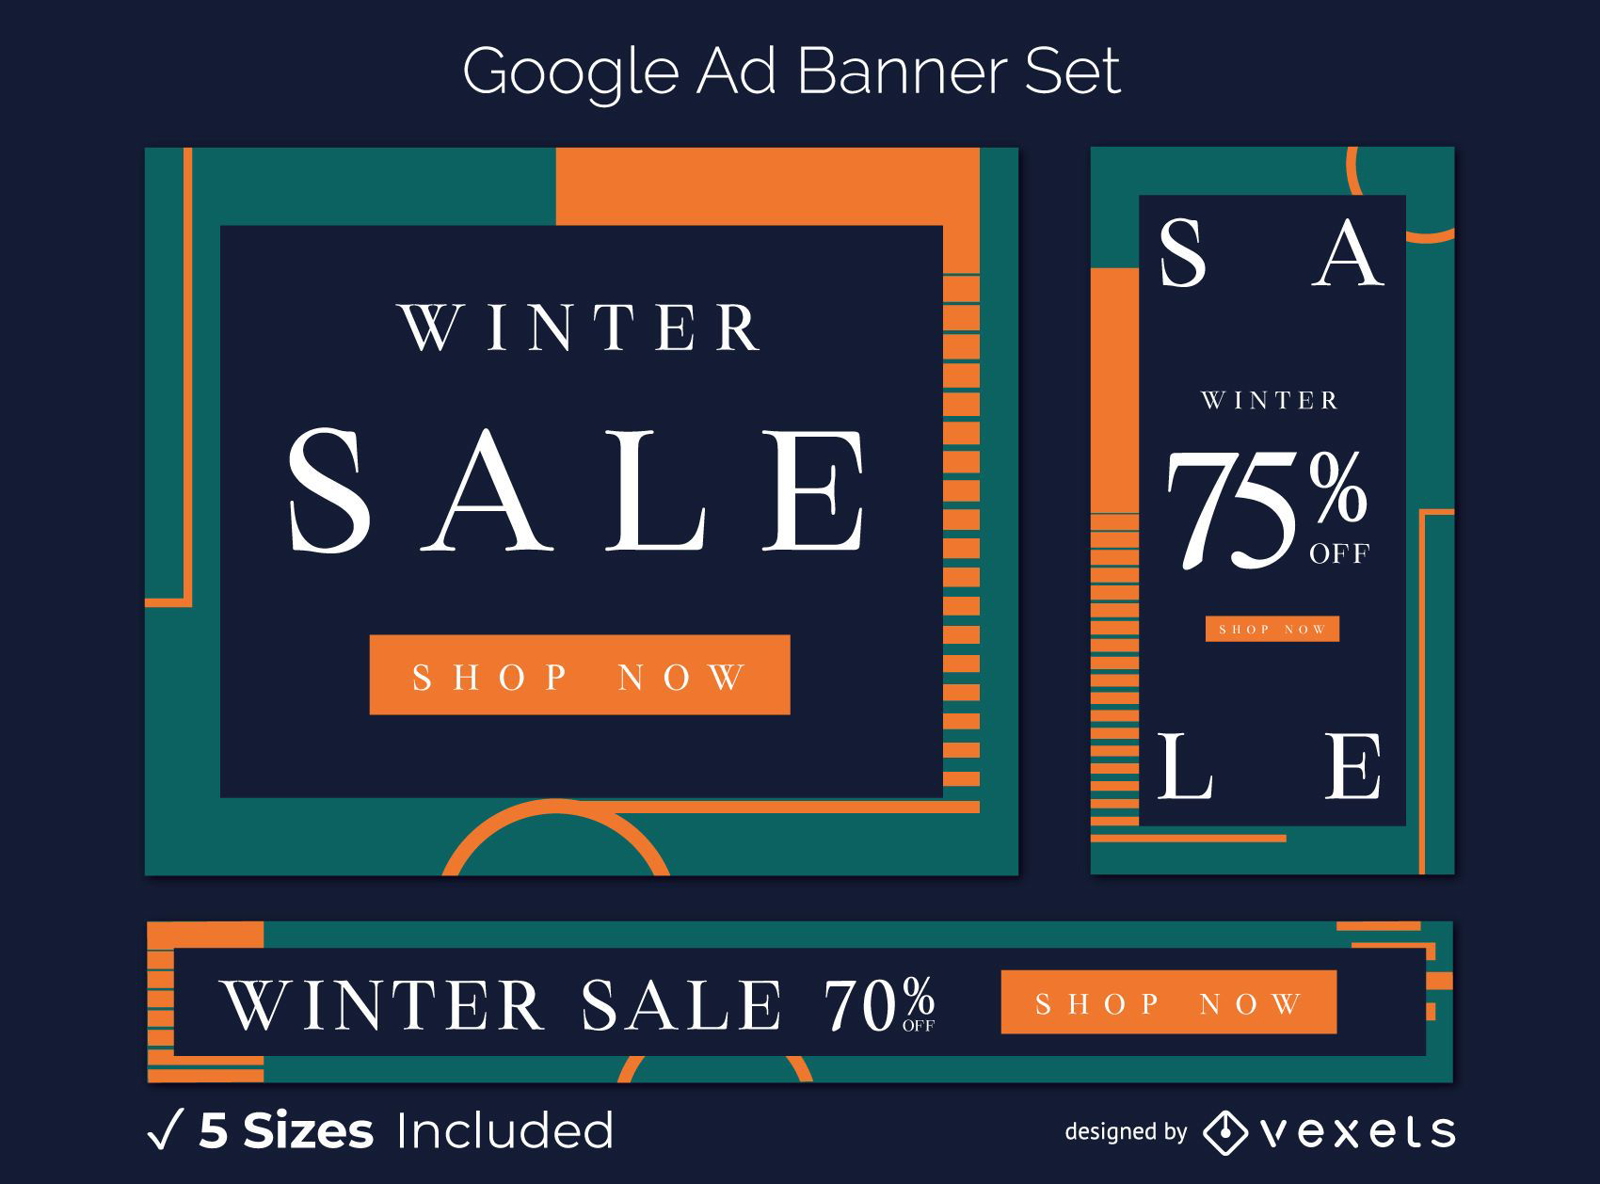 Conjunto de banners art?sticos do Google Ads para venda de inverno